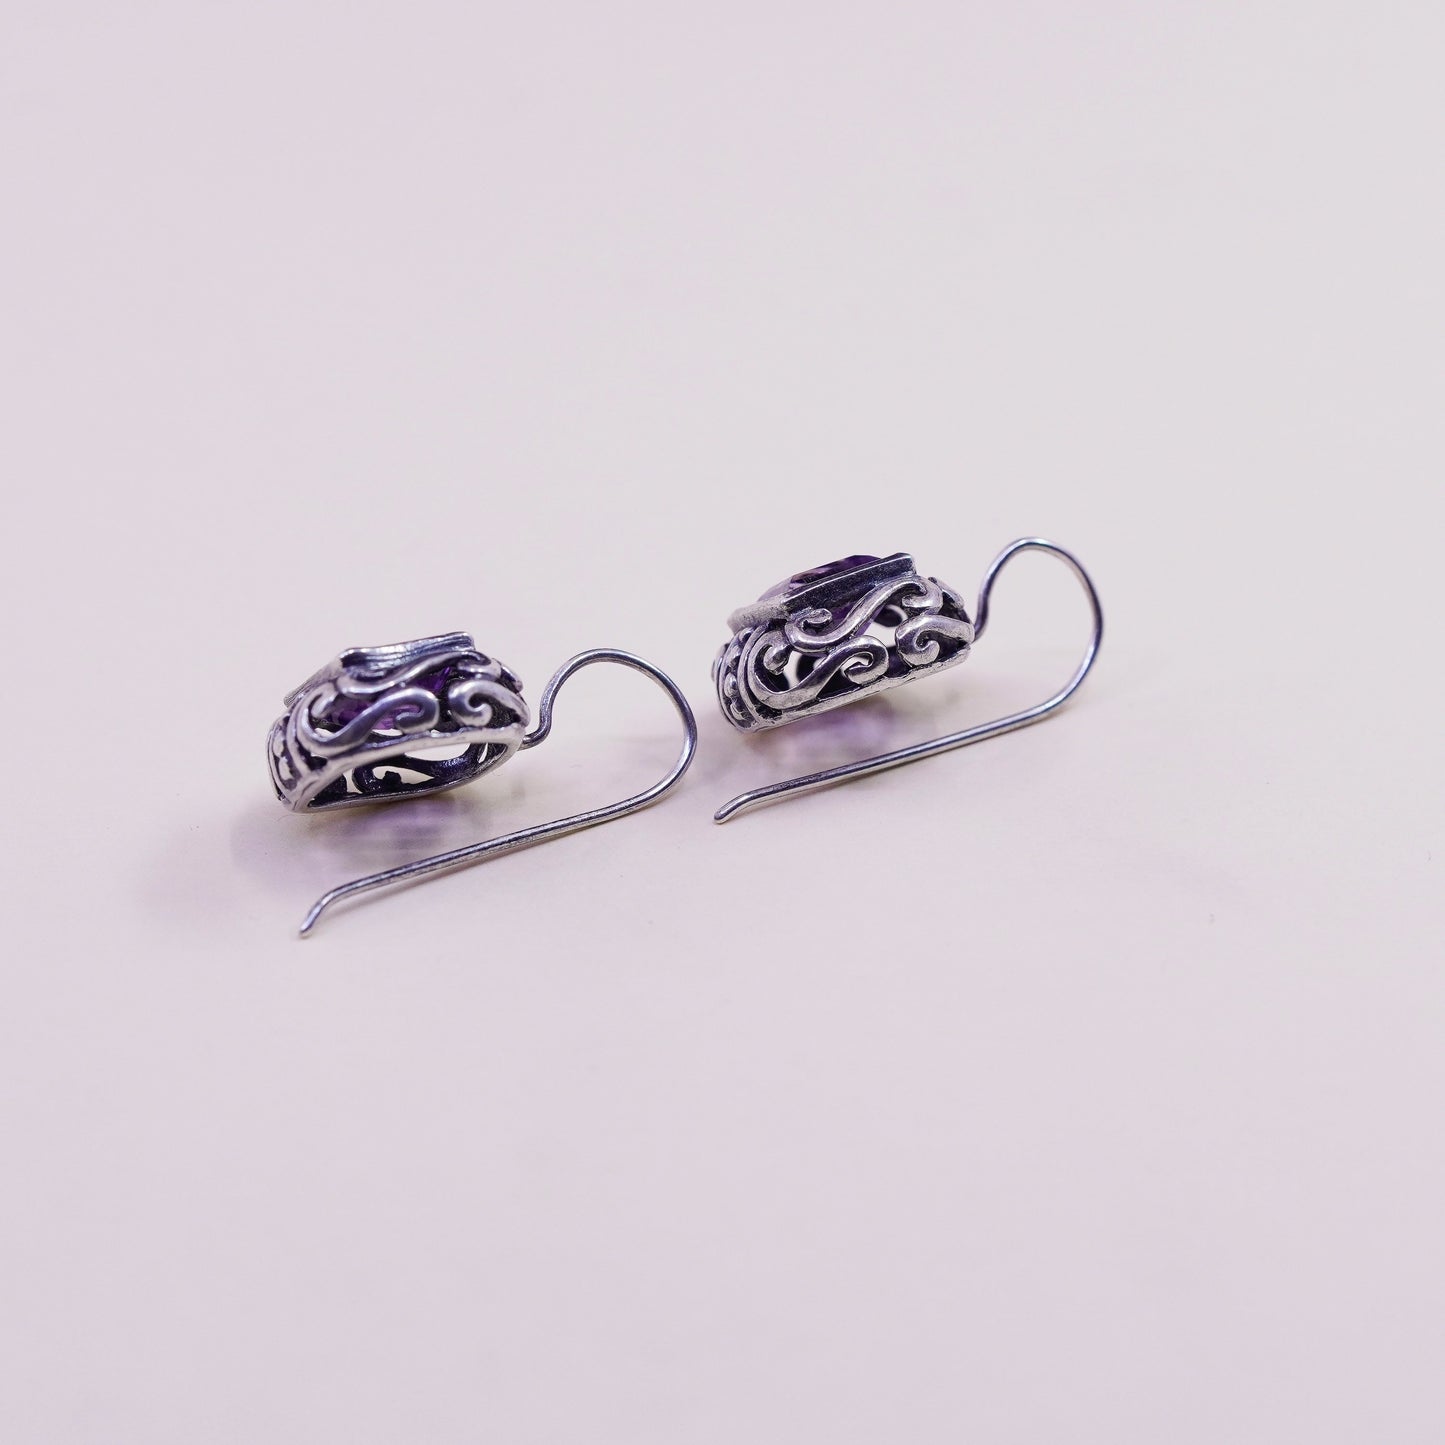 Vintage sterling silver handmade earrings, 925 filigree drops with amethyst